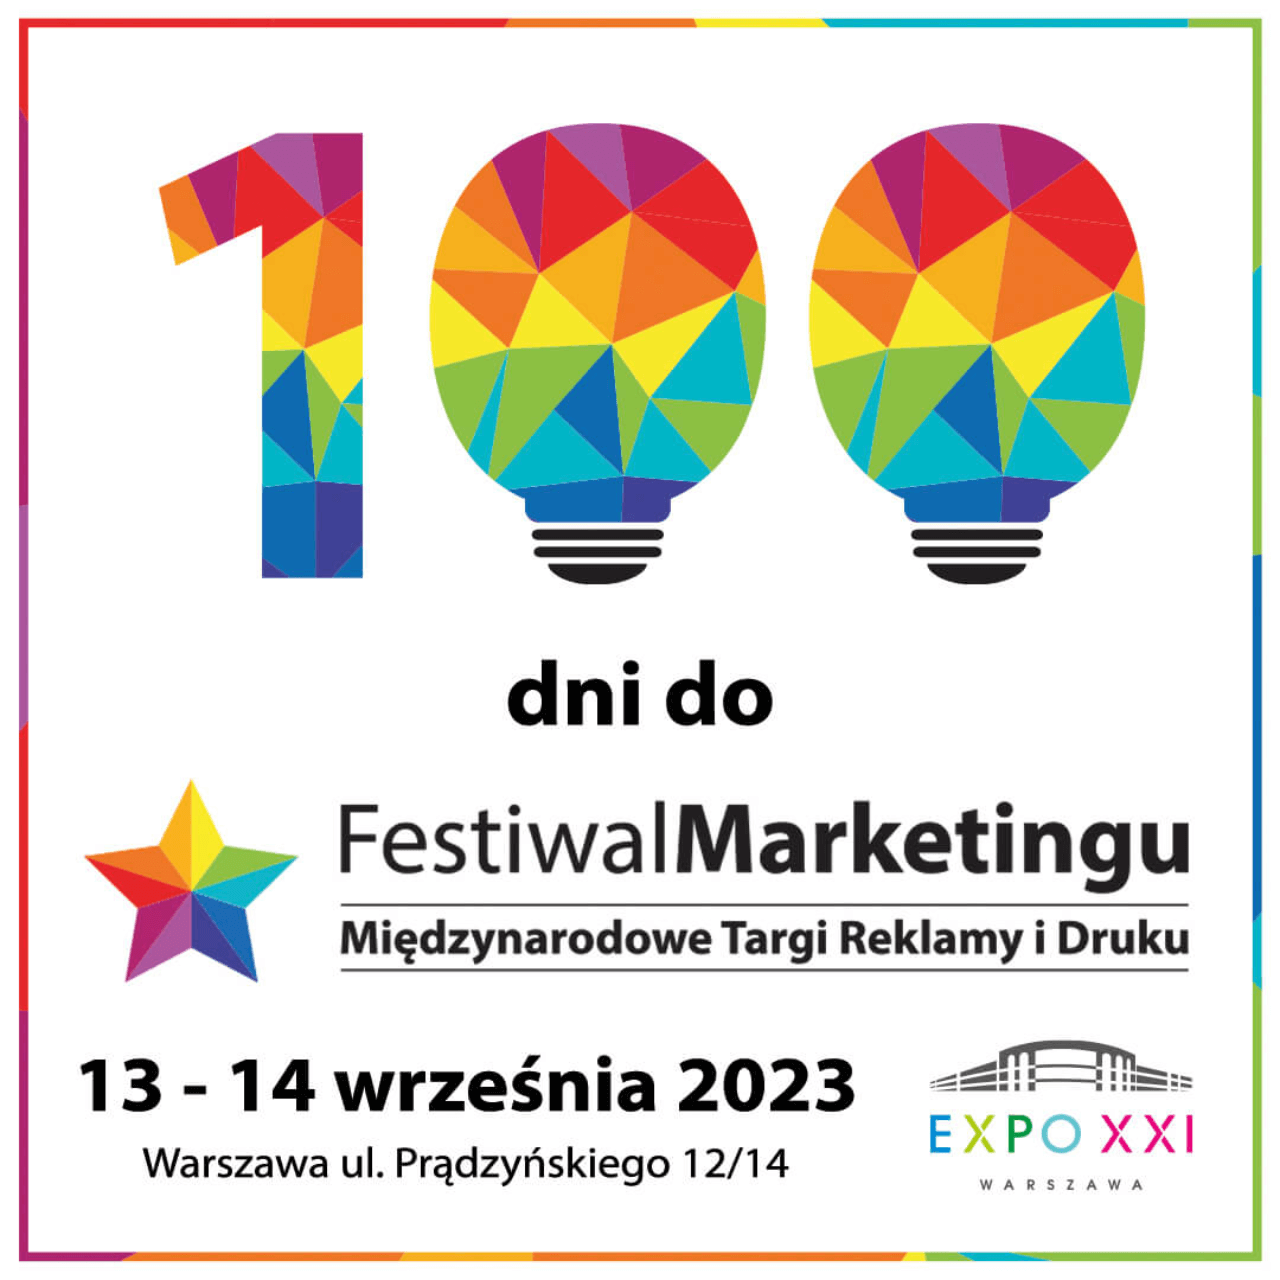 100 dni do festiwal marketingu